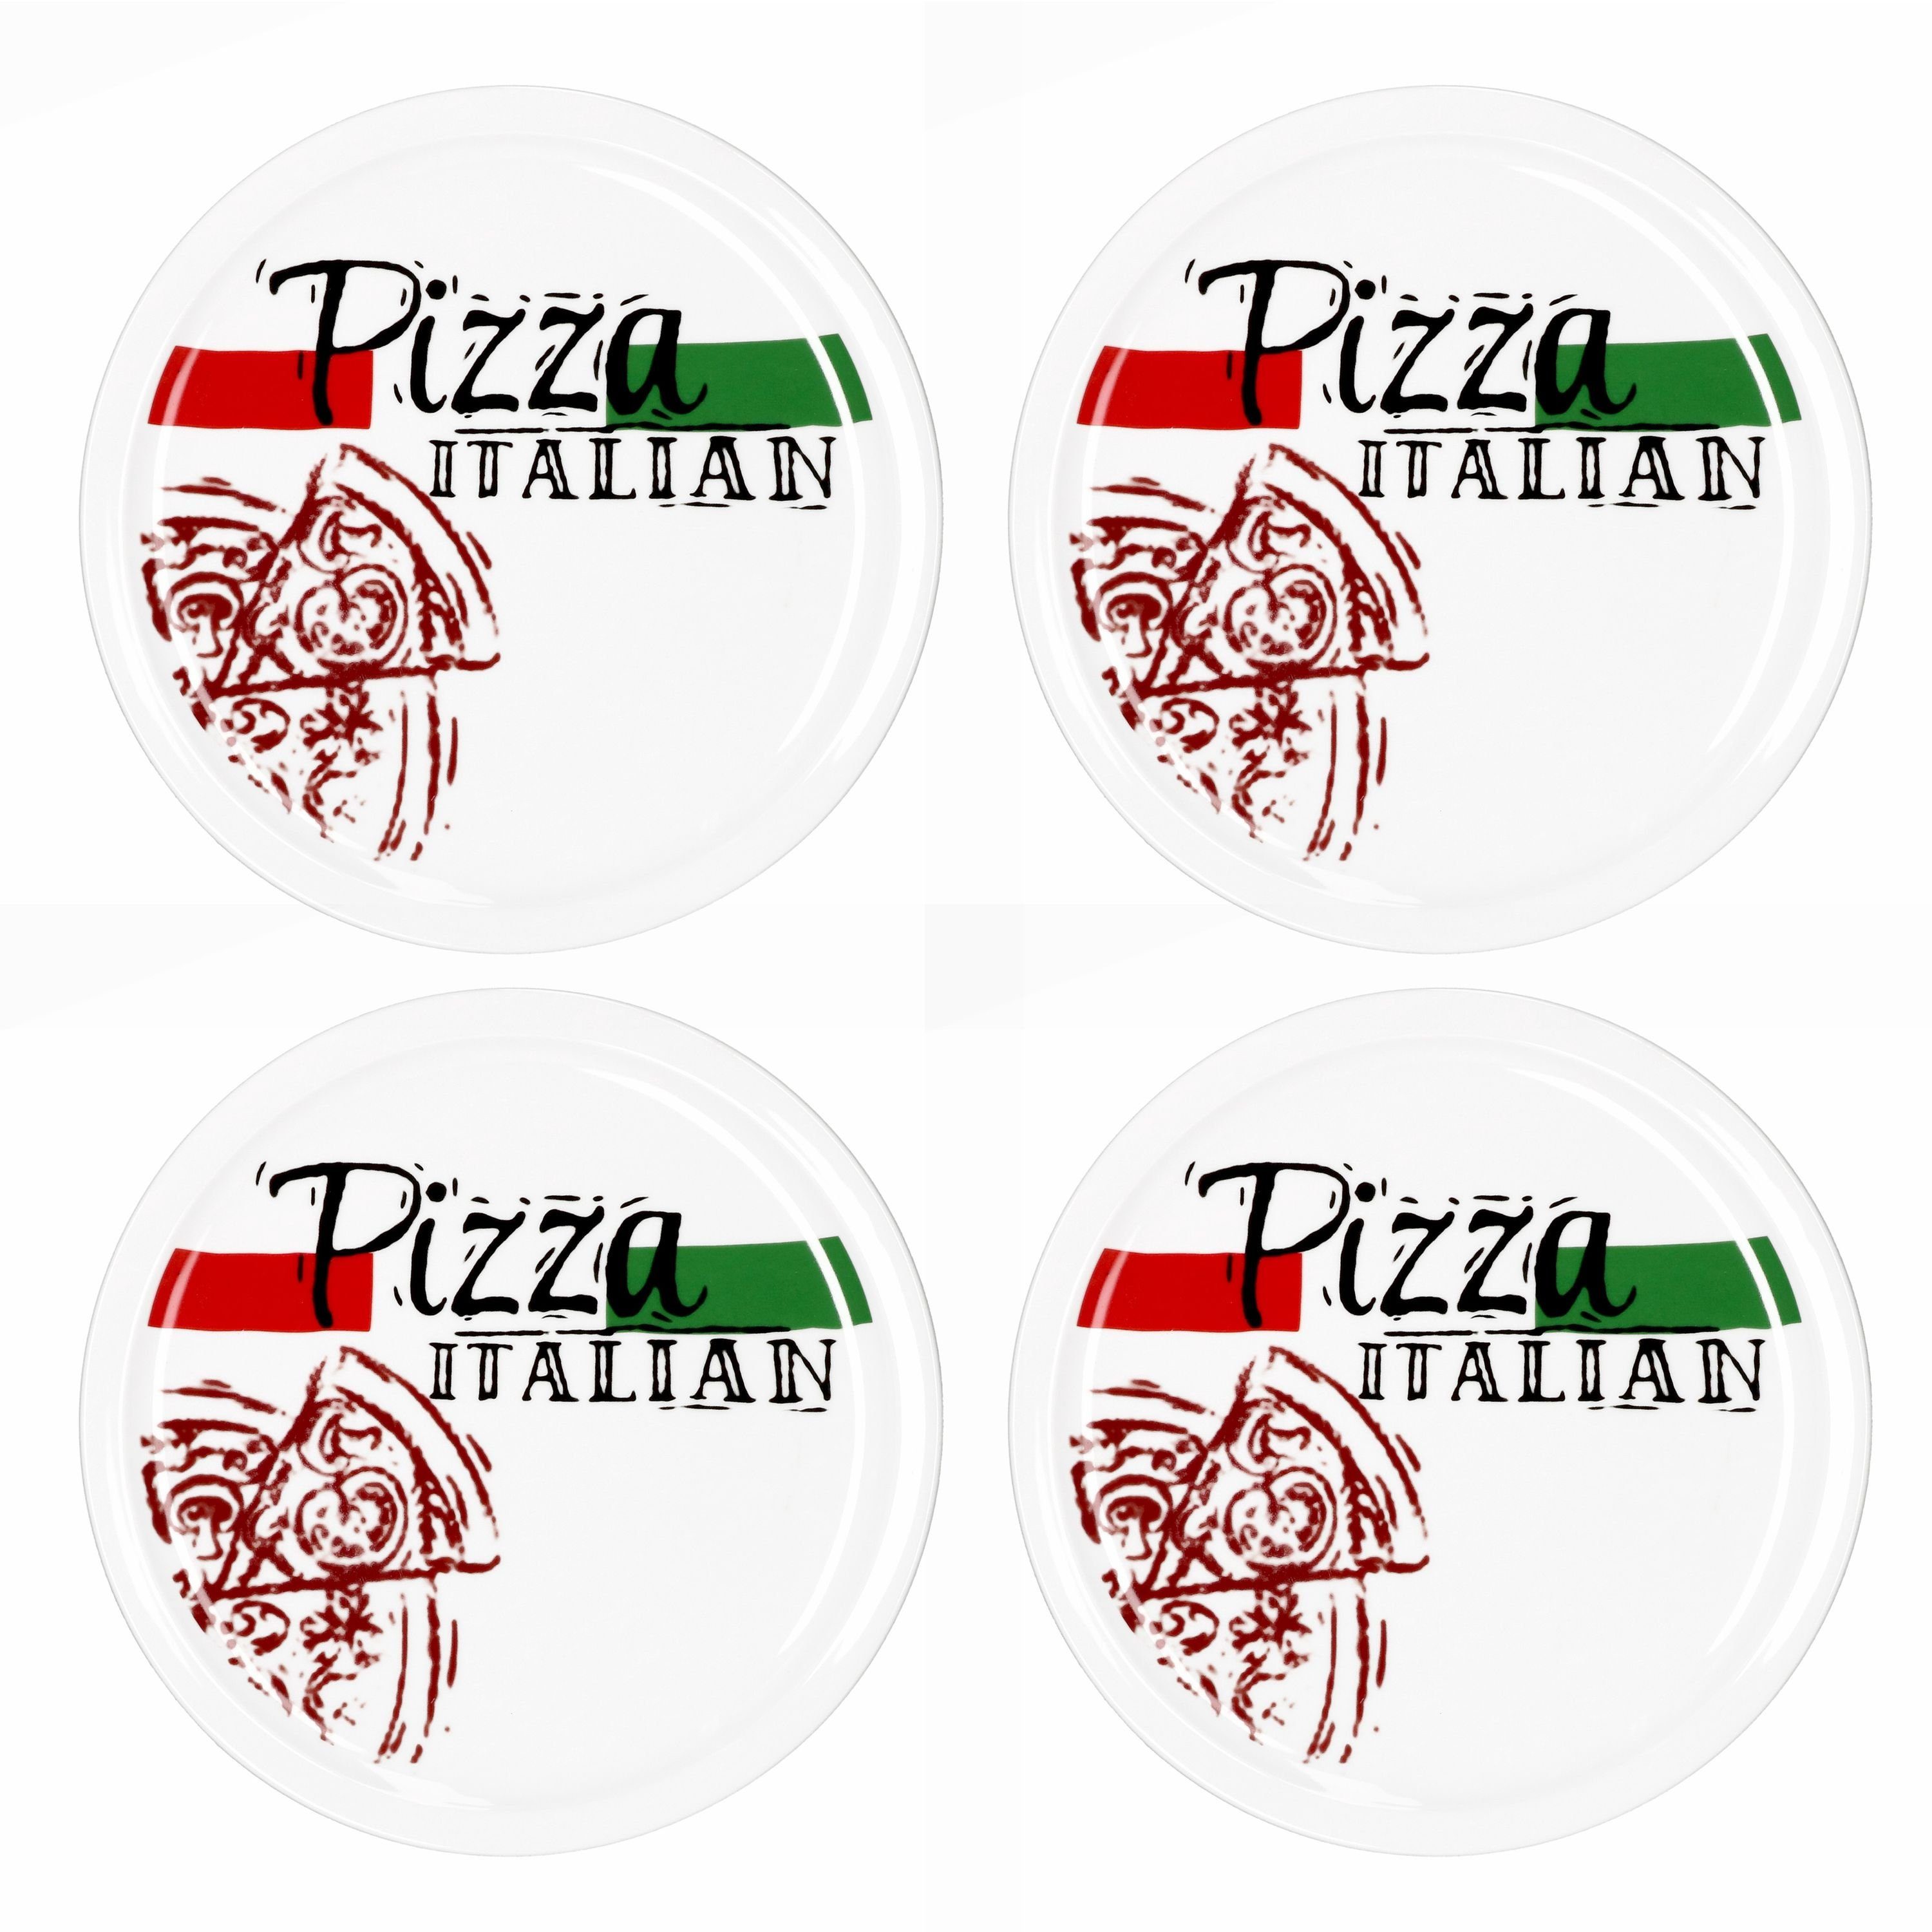 MamboCat Pizzateller 4er Set Pizzateller Pizza Italian 28cm